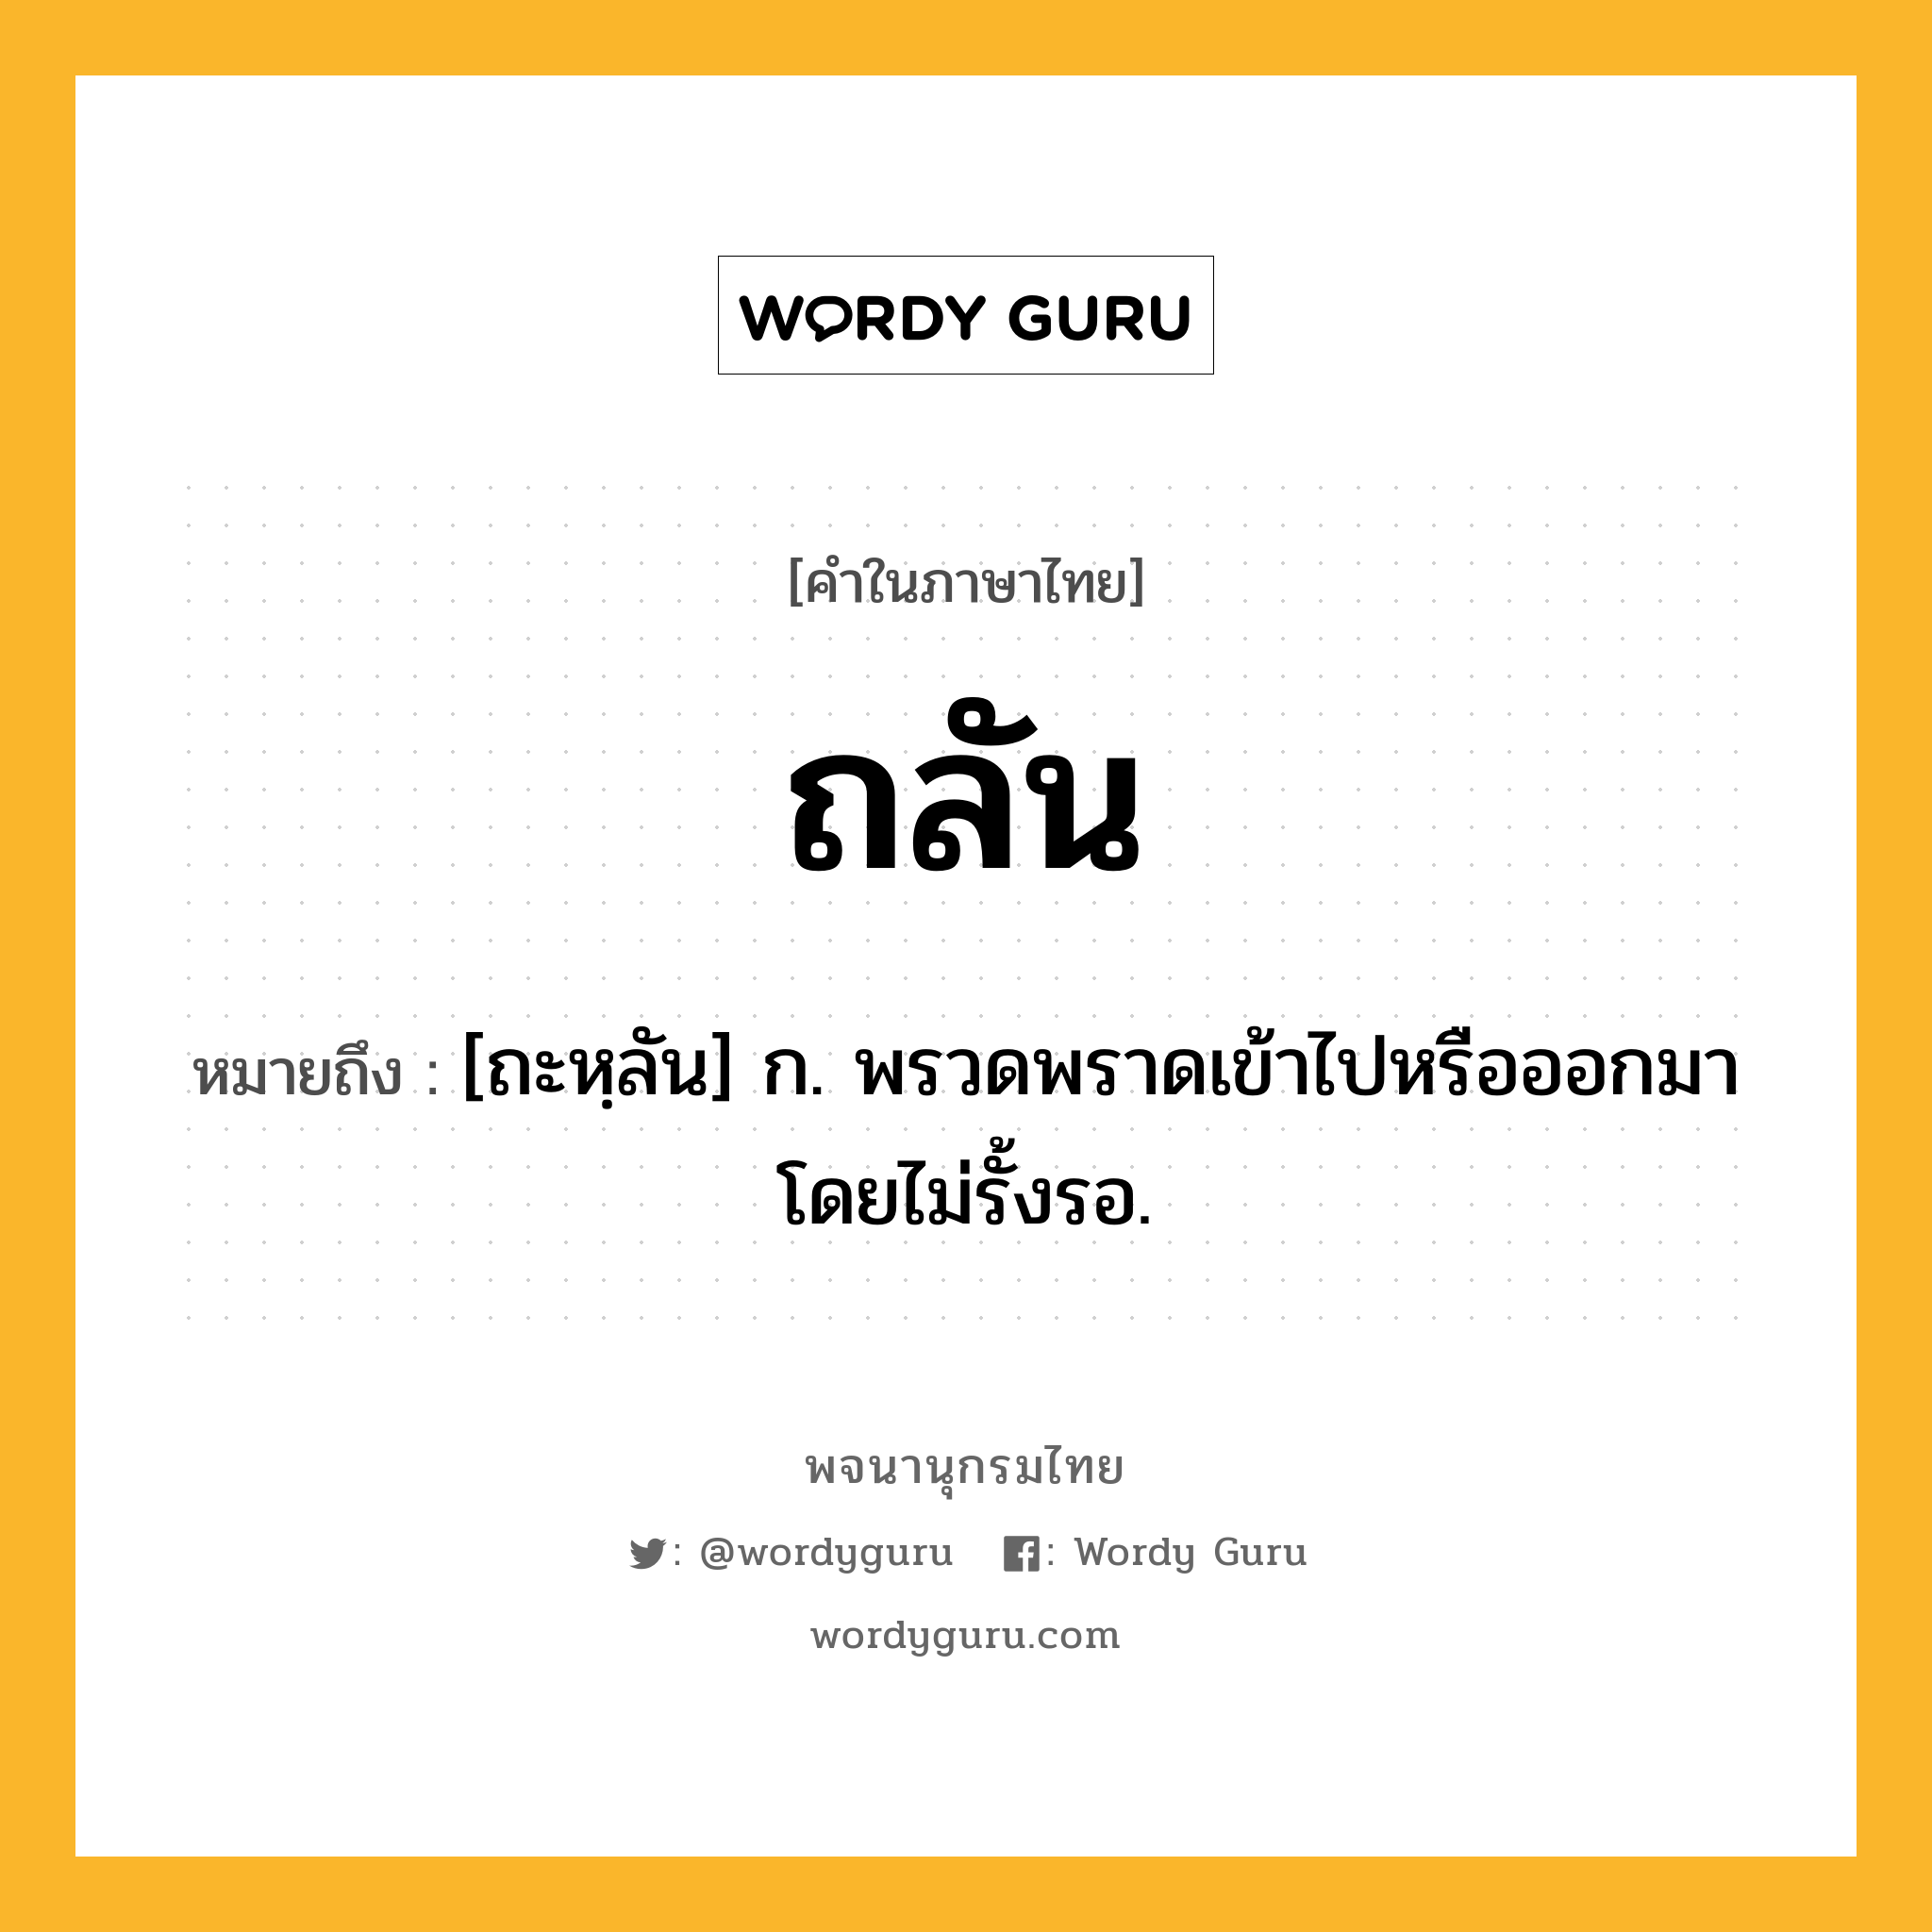 ถลัน ความหมาย หมายถึงอะไร?, คำในภาษาไทย ถลัน หมายถึง [ถะหฺลัน] ก. พรวดพราดเข้าไปหรือออกมาโดยไม่รั้งรอ.